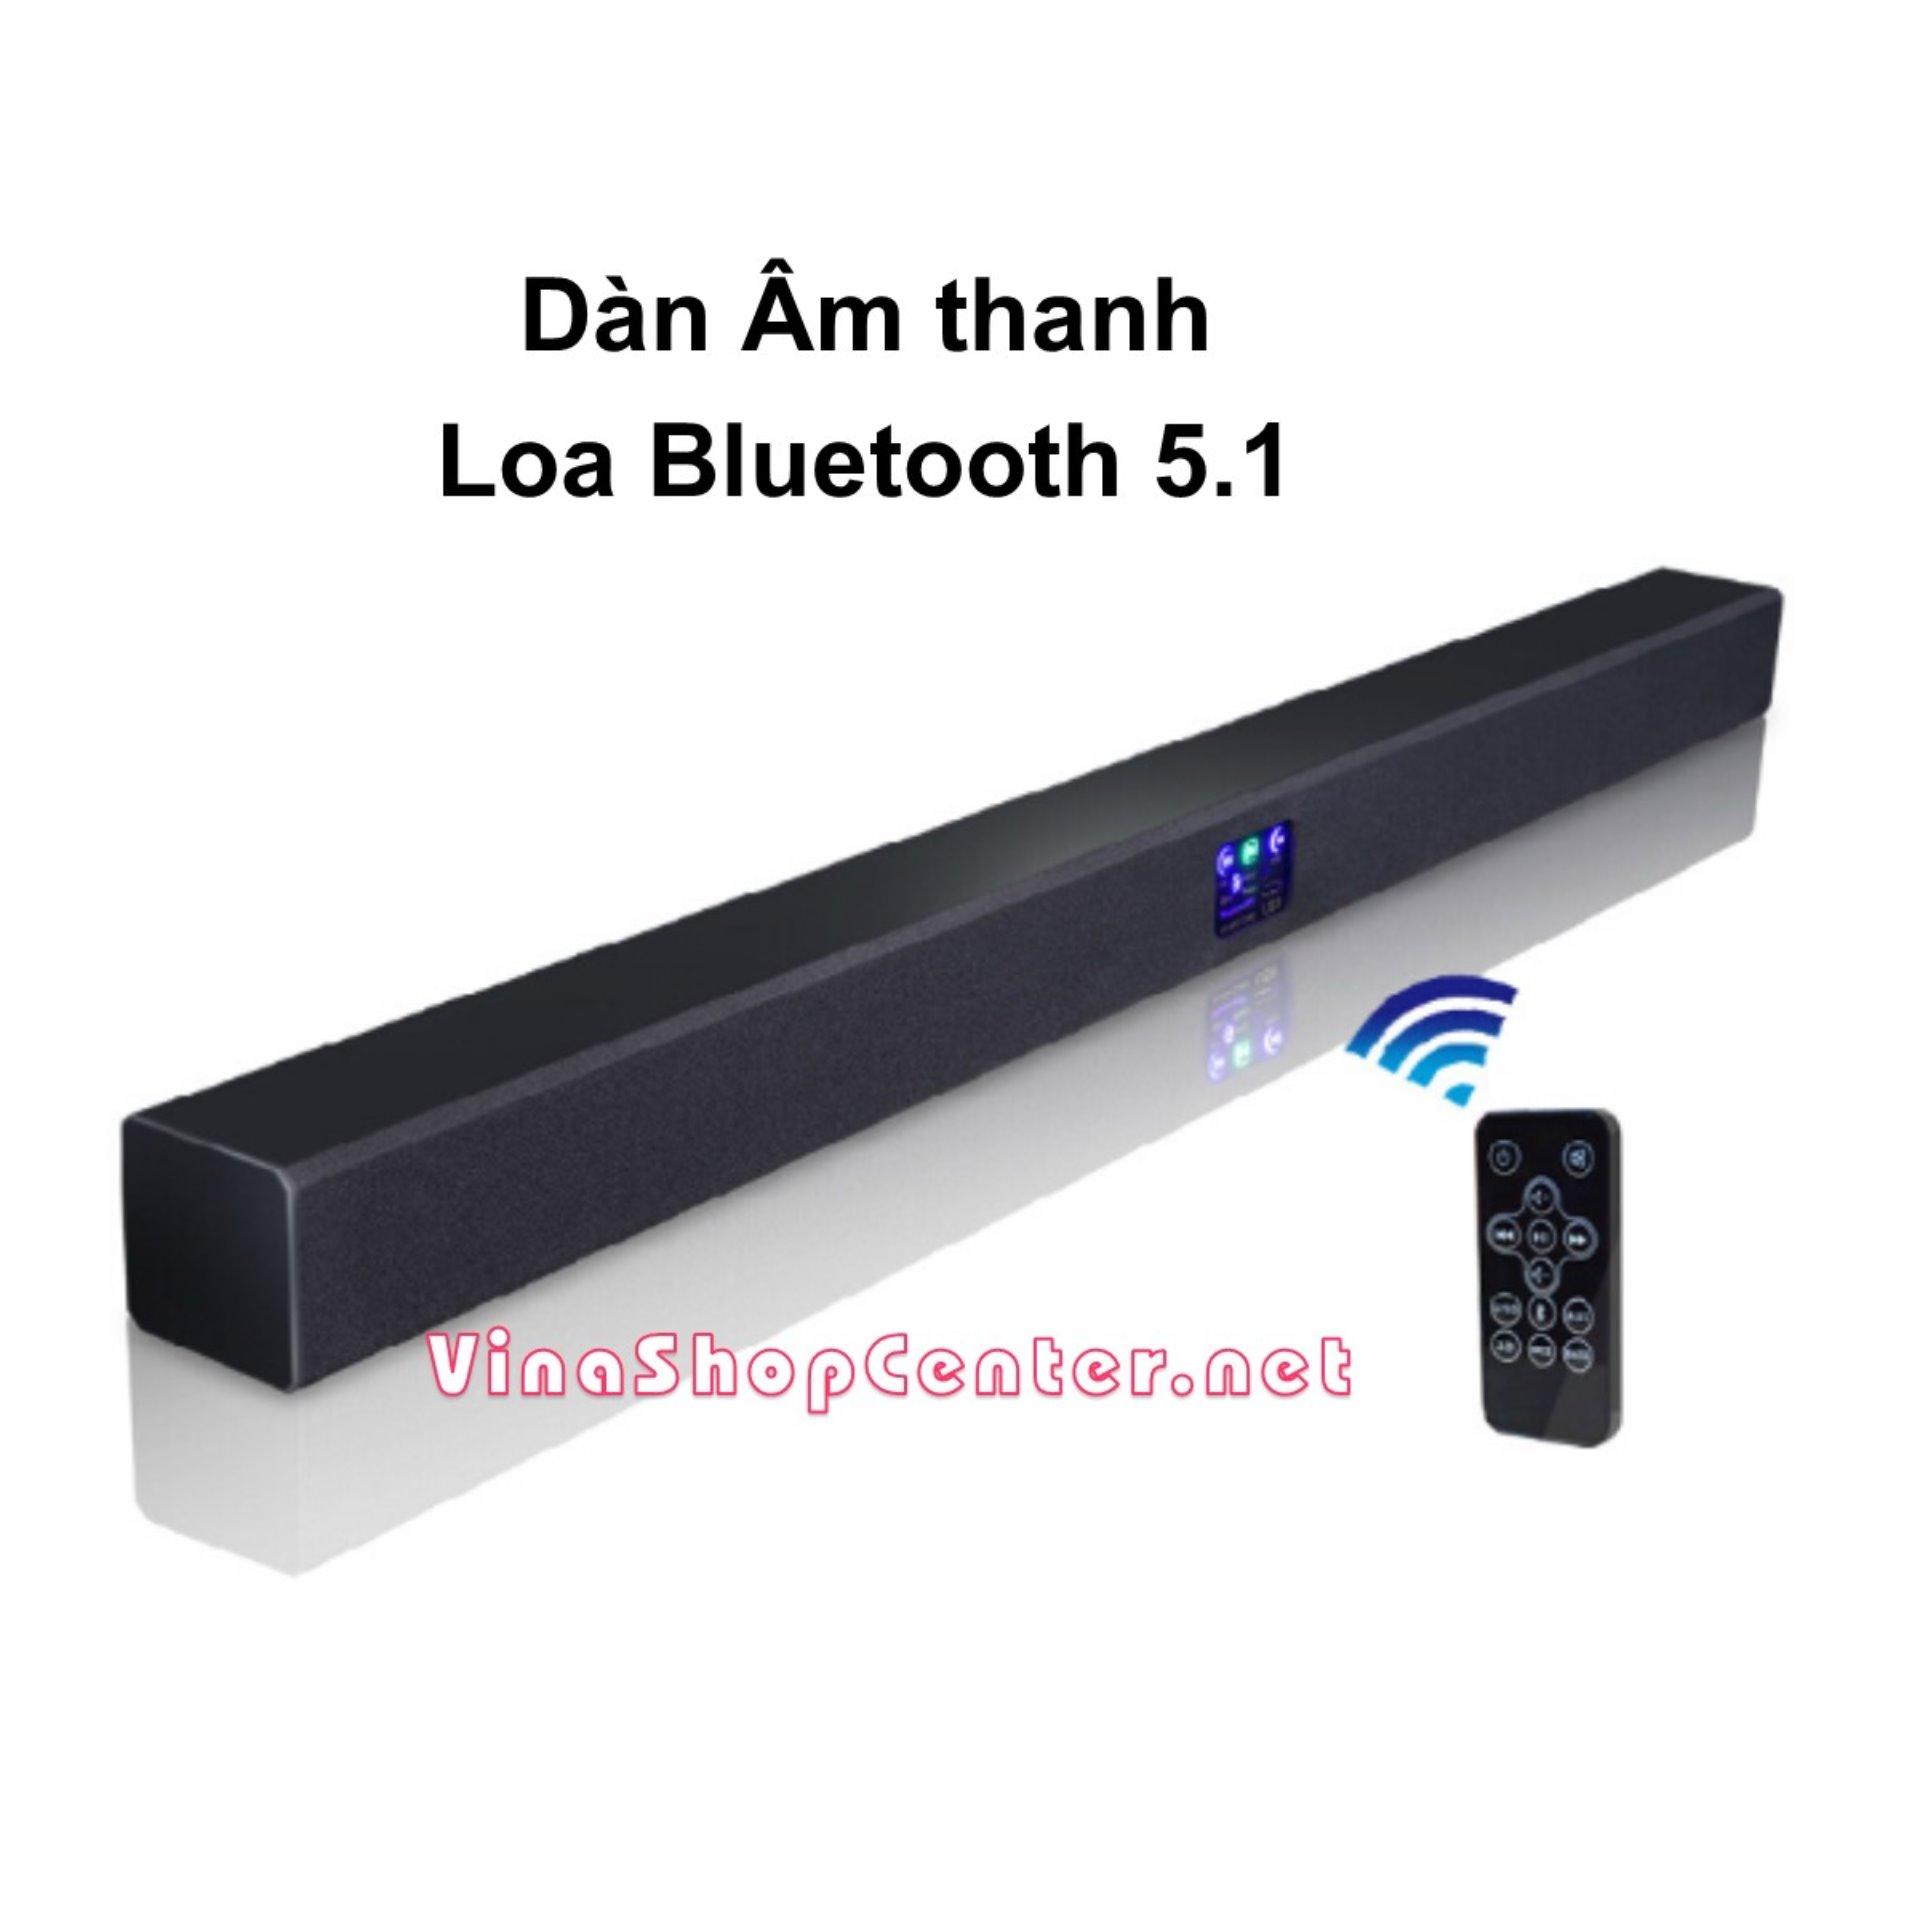 Dàn Âm thanh Loa Bluetooth 5.1 cây dài